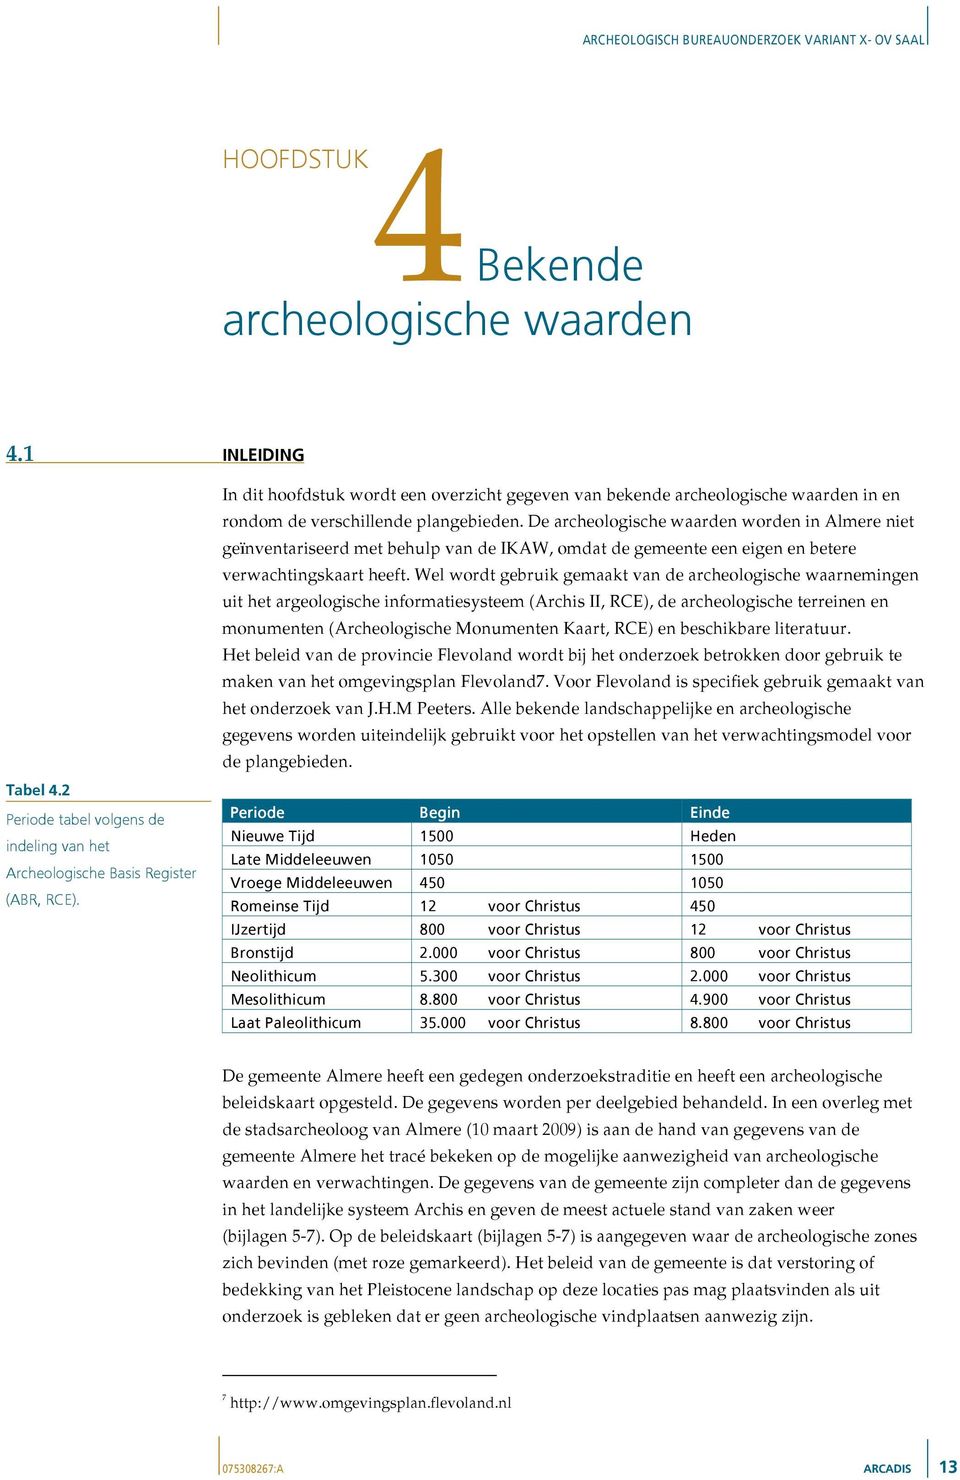 De archeologische waarden worden in Almere niet geïnventariseerd met behulp van de IKAW, omdat de gemeente een eigen en betere verwachtingskaart heeft.